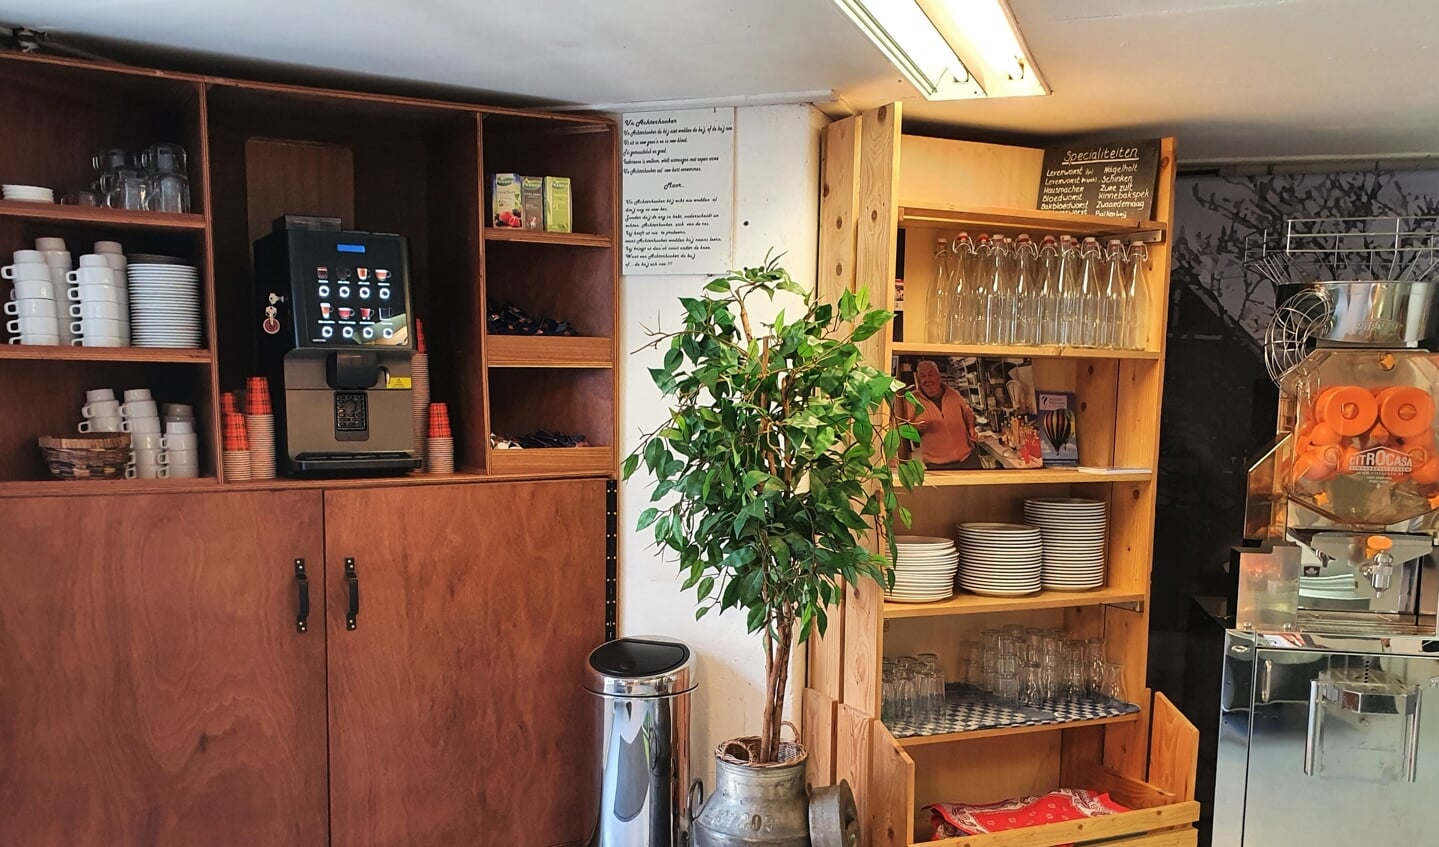 Koffie, thee, verse jus is verkrijgbaar in de winkel. Foto: Alice Rouwhorst